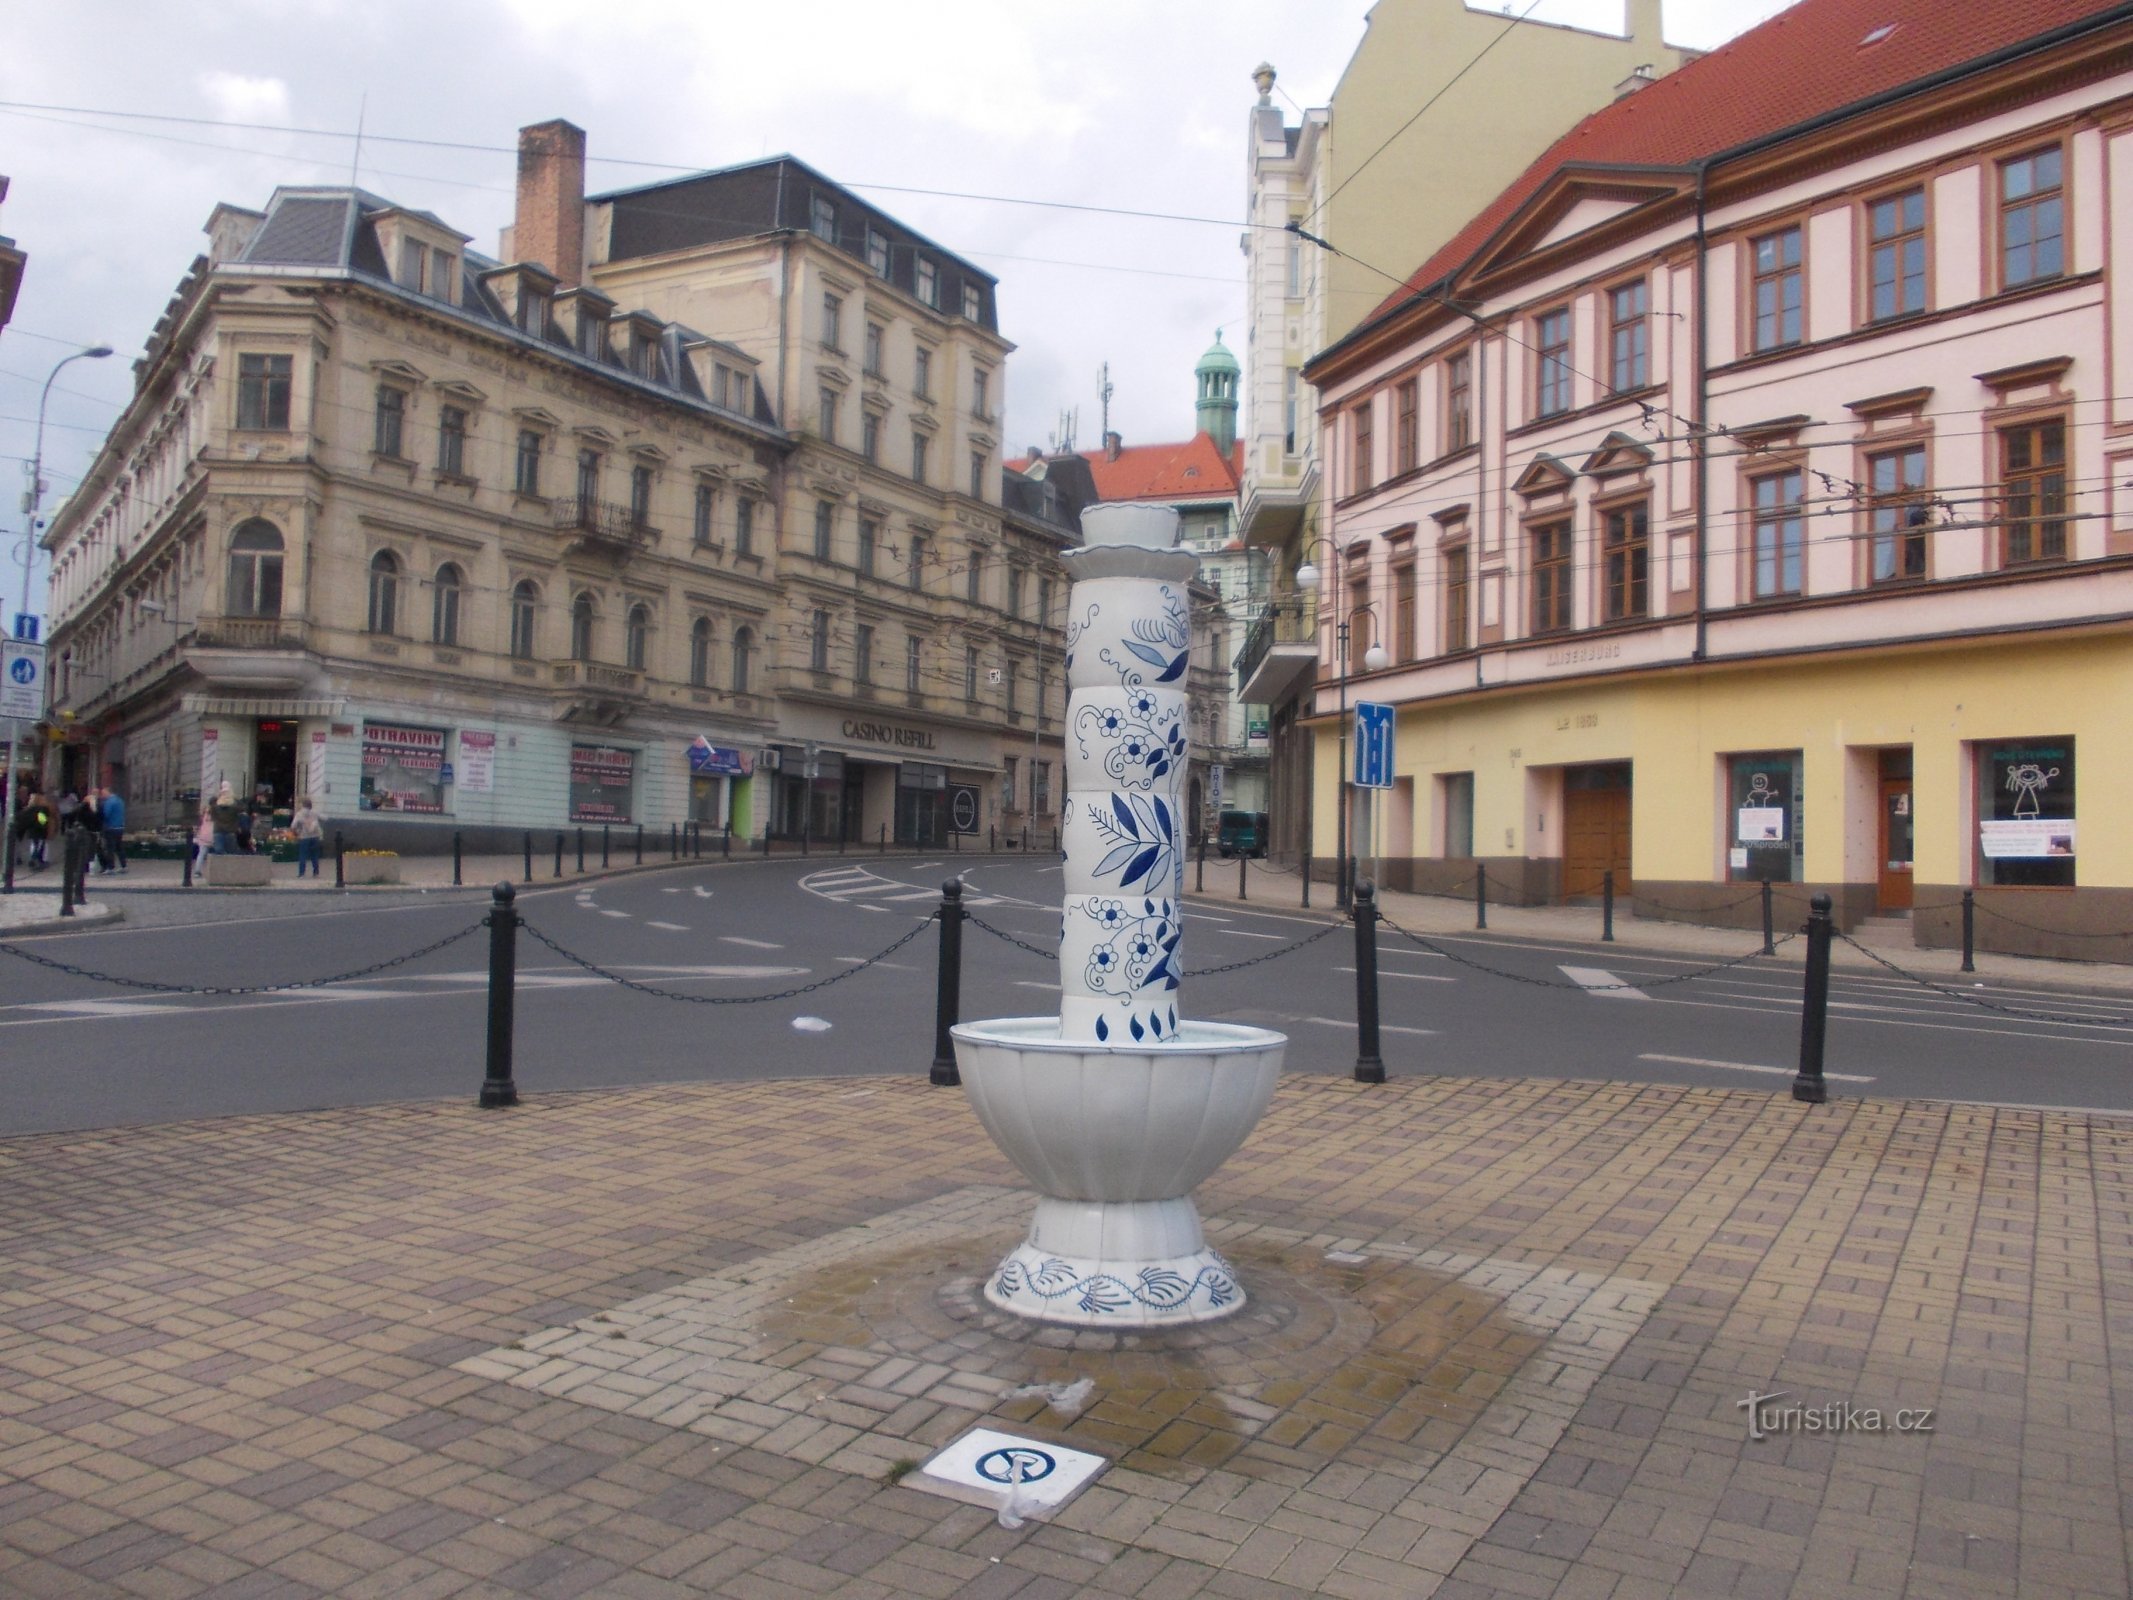 fontanna na skrzyżowaniu ulic U Císařských lázní i U divádla